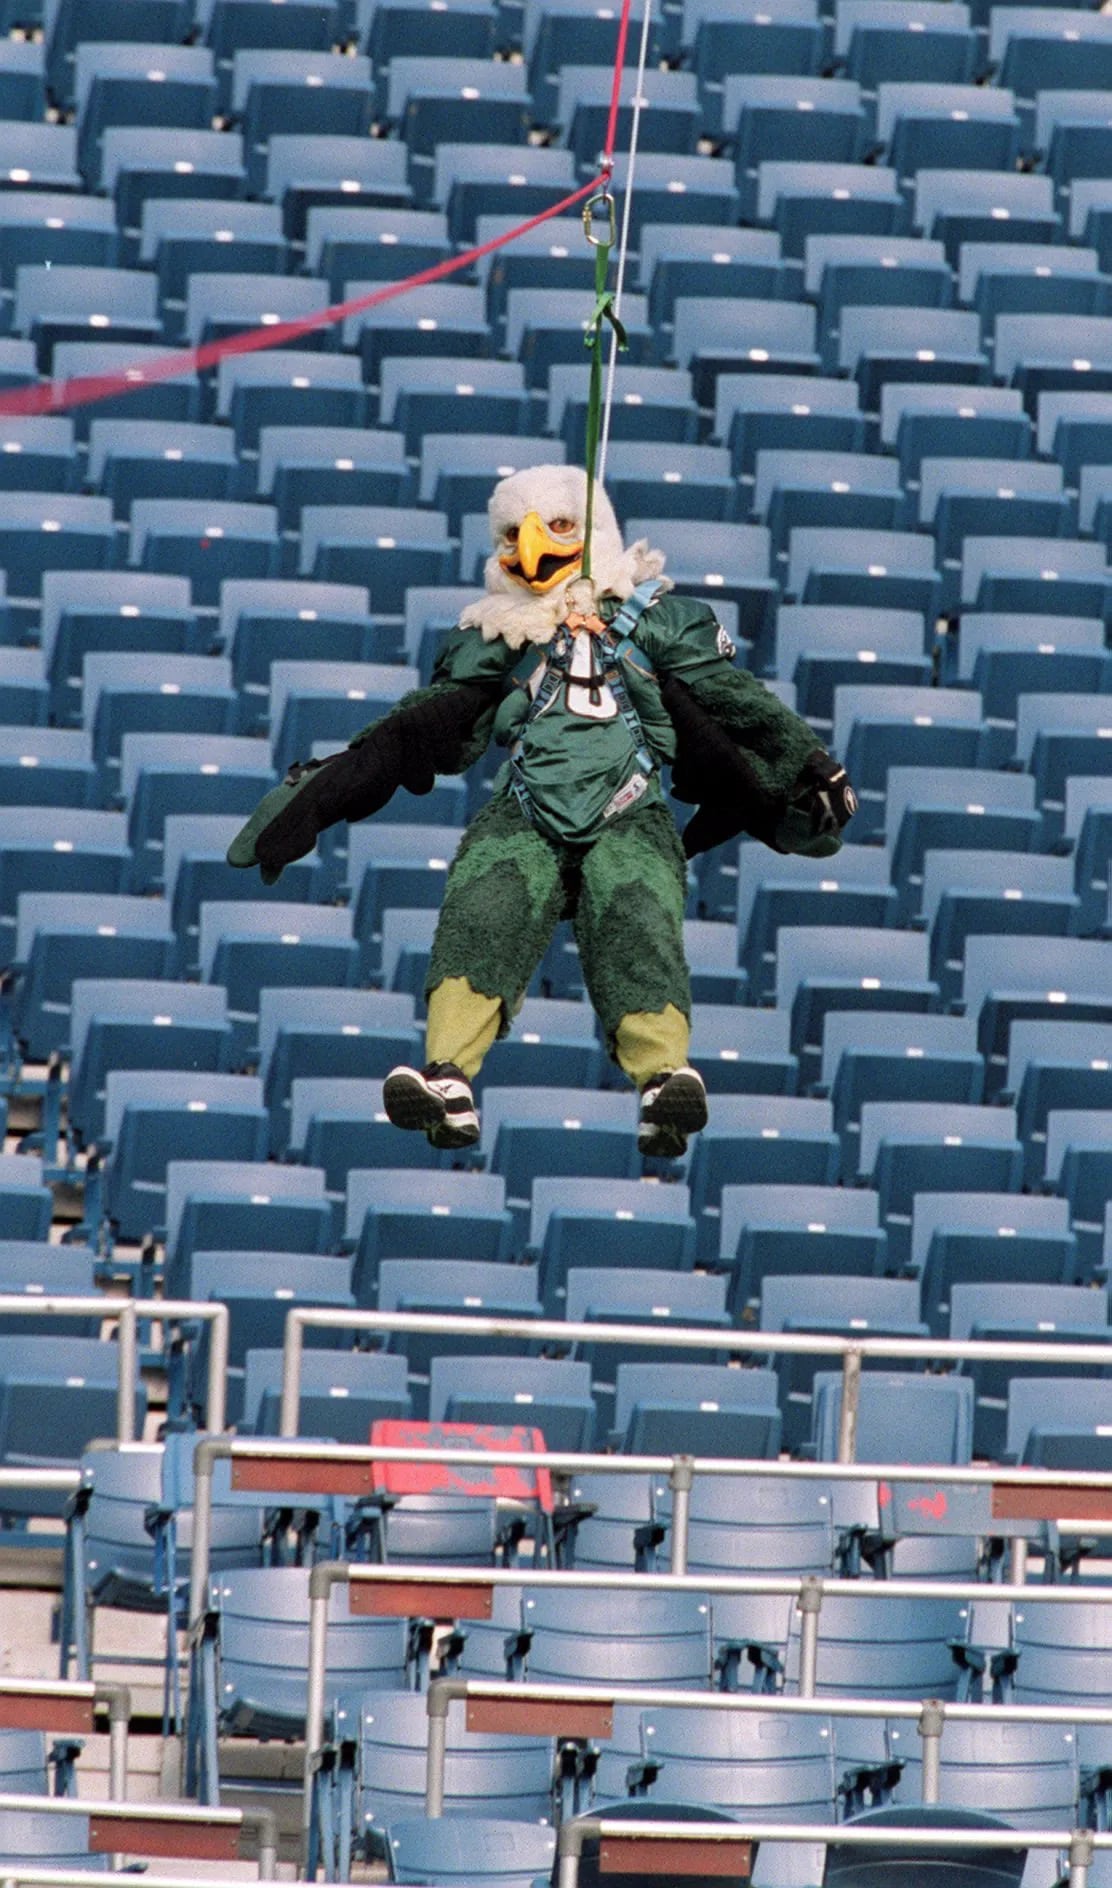 SNOW SWOOP Philadelphia Eagles mascot #Swoop #Philadelphia #Eagles # mascot #NFL #s…